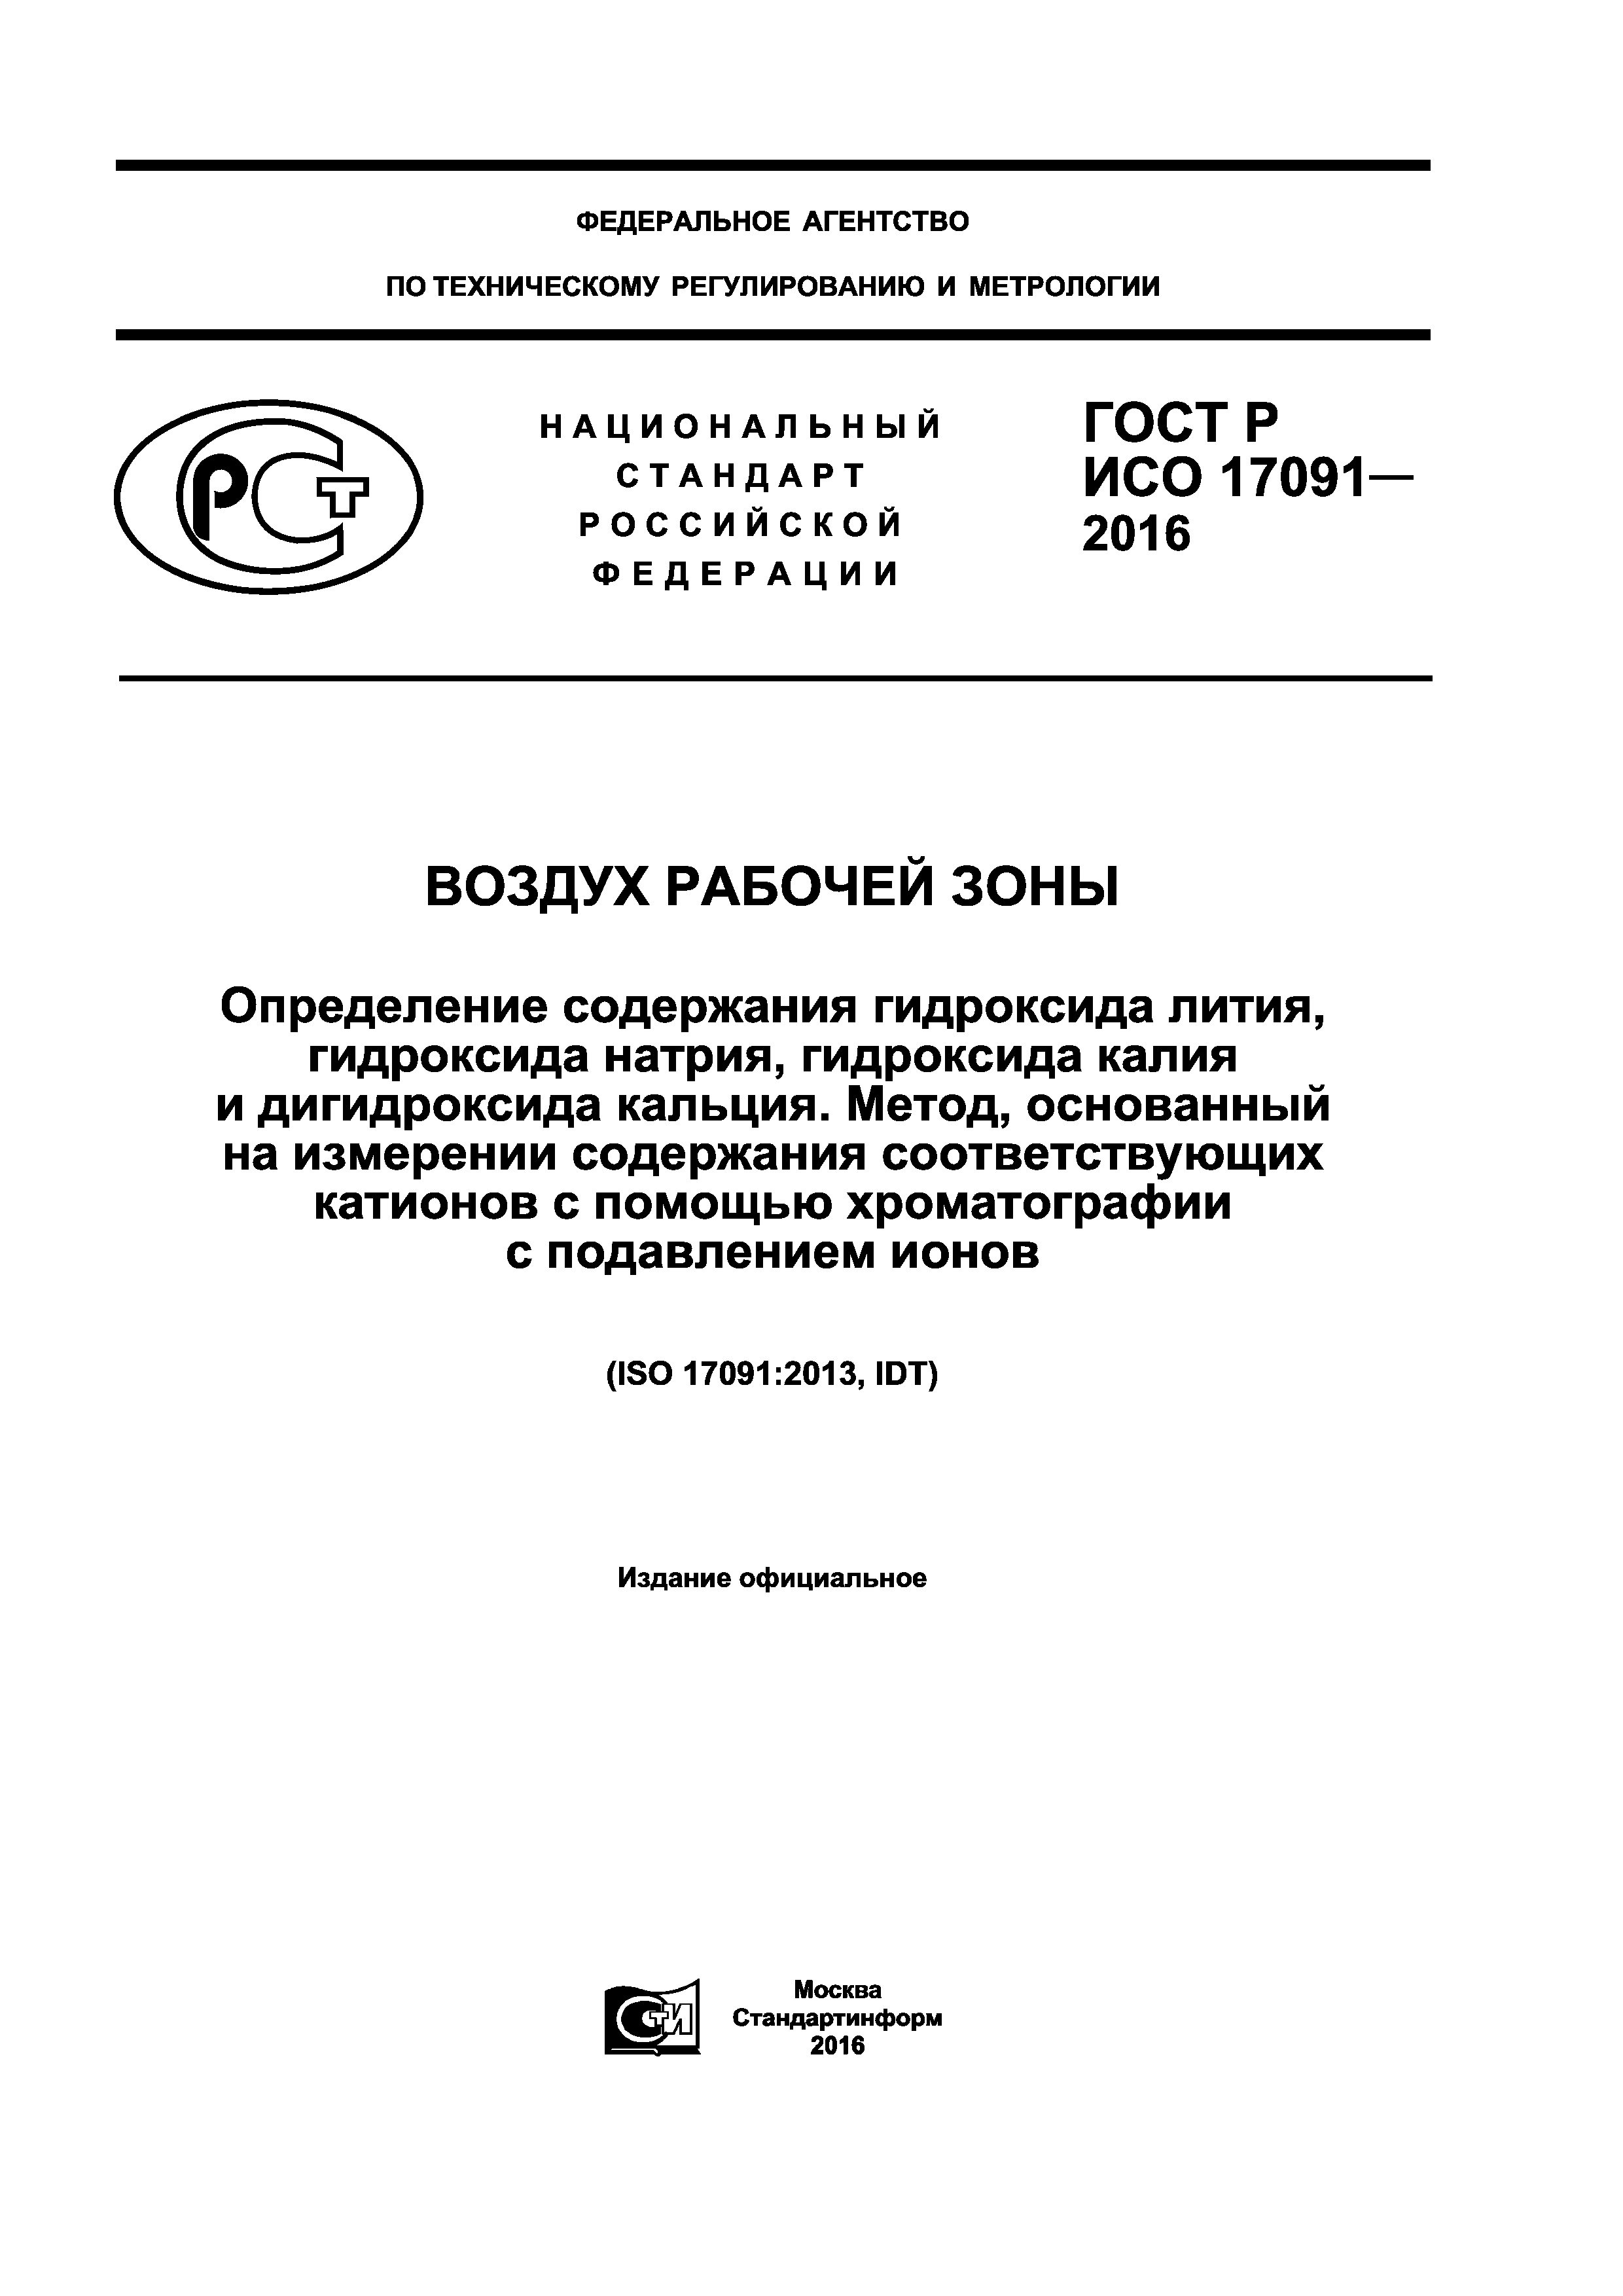 ГОСТ Р ИСО 17091-2016